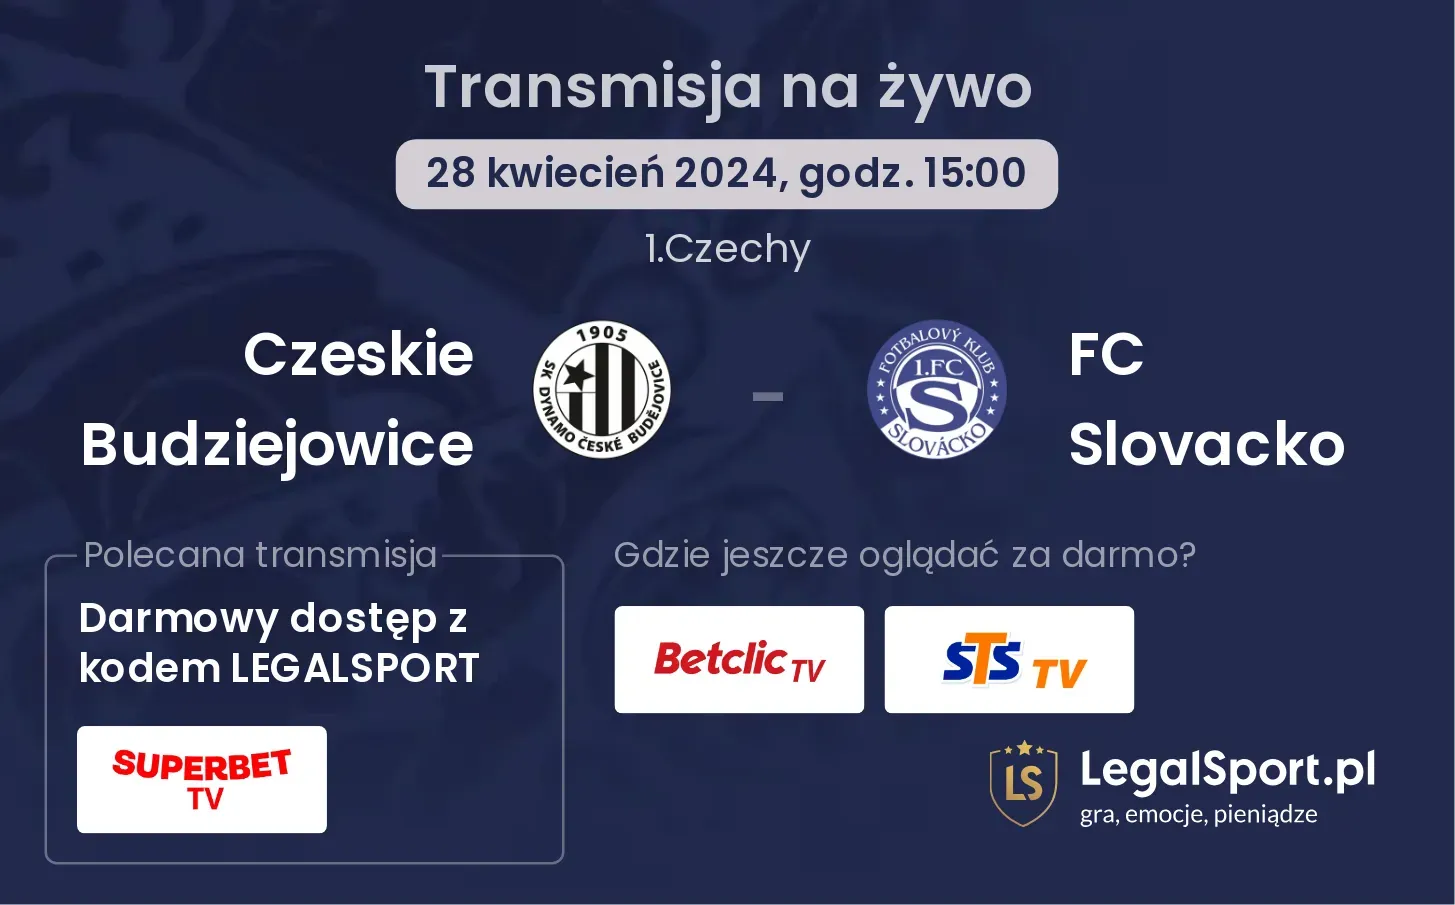 Czeskie Budziejowice - FC Slovacko transmisja na żywo